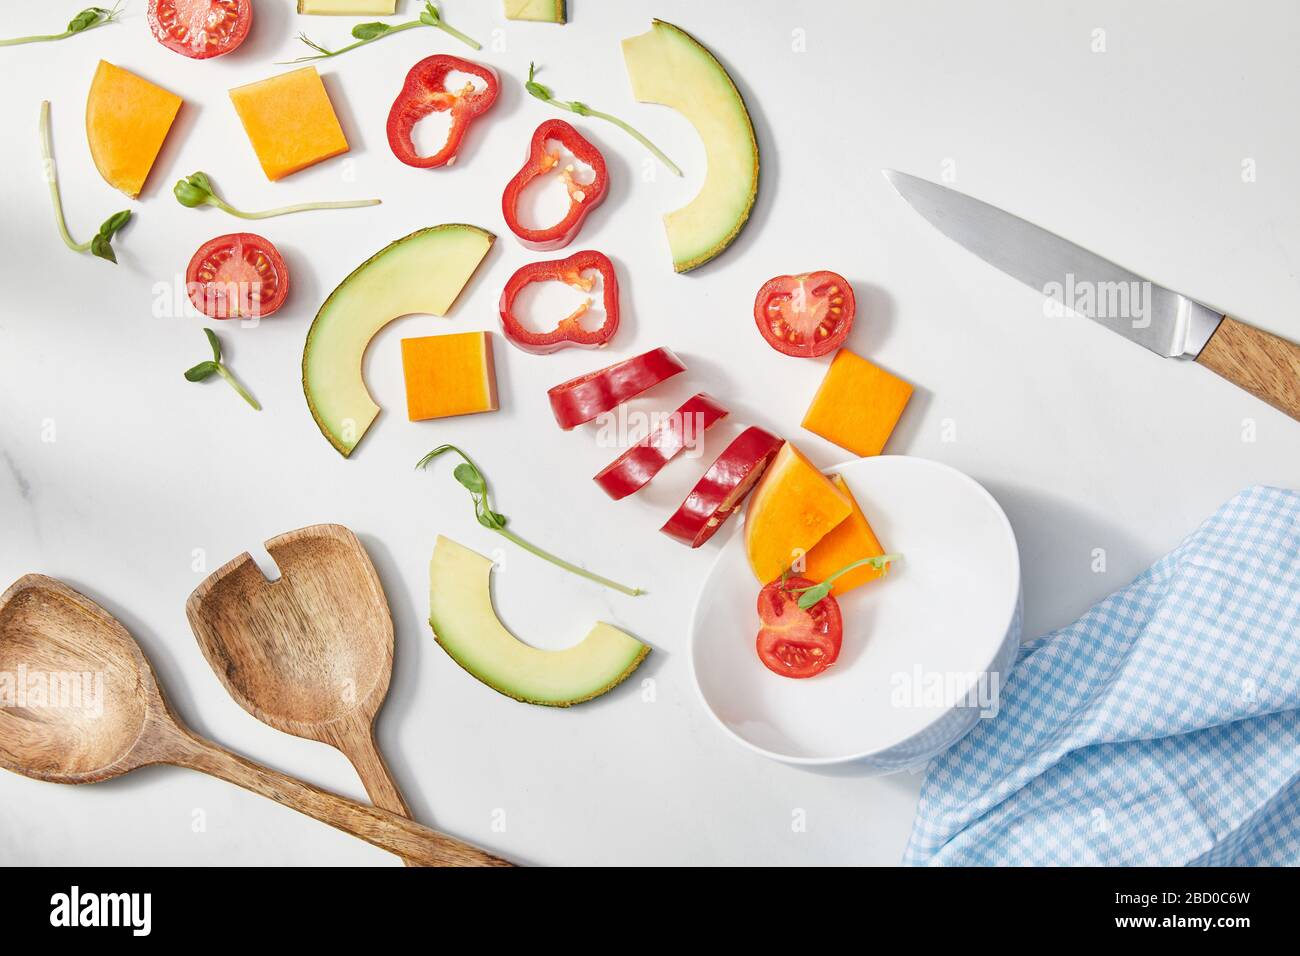 Vue de dessus du bol avec microgreens, légumes coupés et tranches d'avocat près du couteau, spatules et tissu sur blanc Banque D'Images